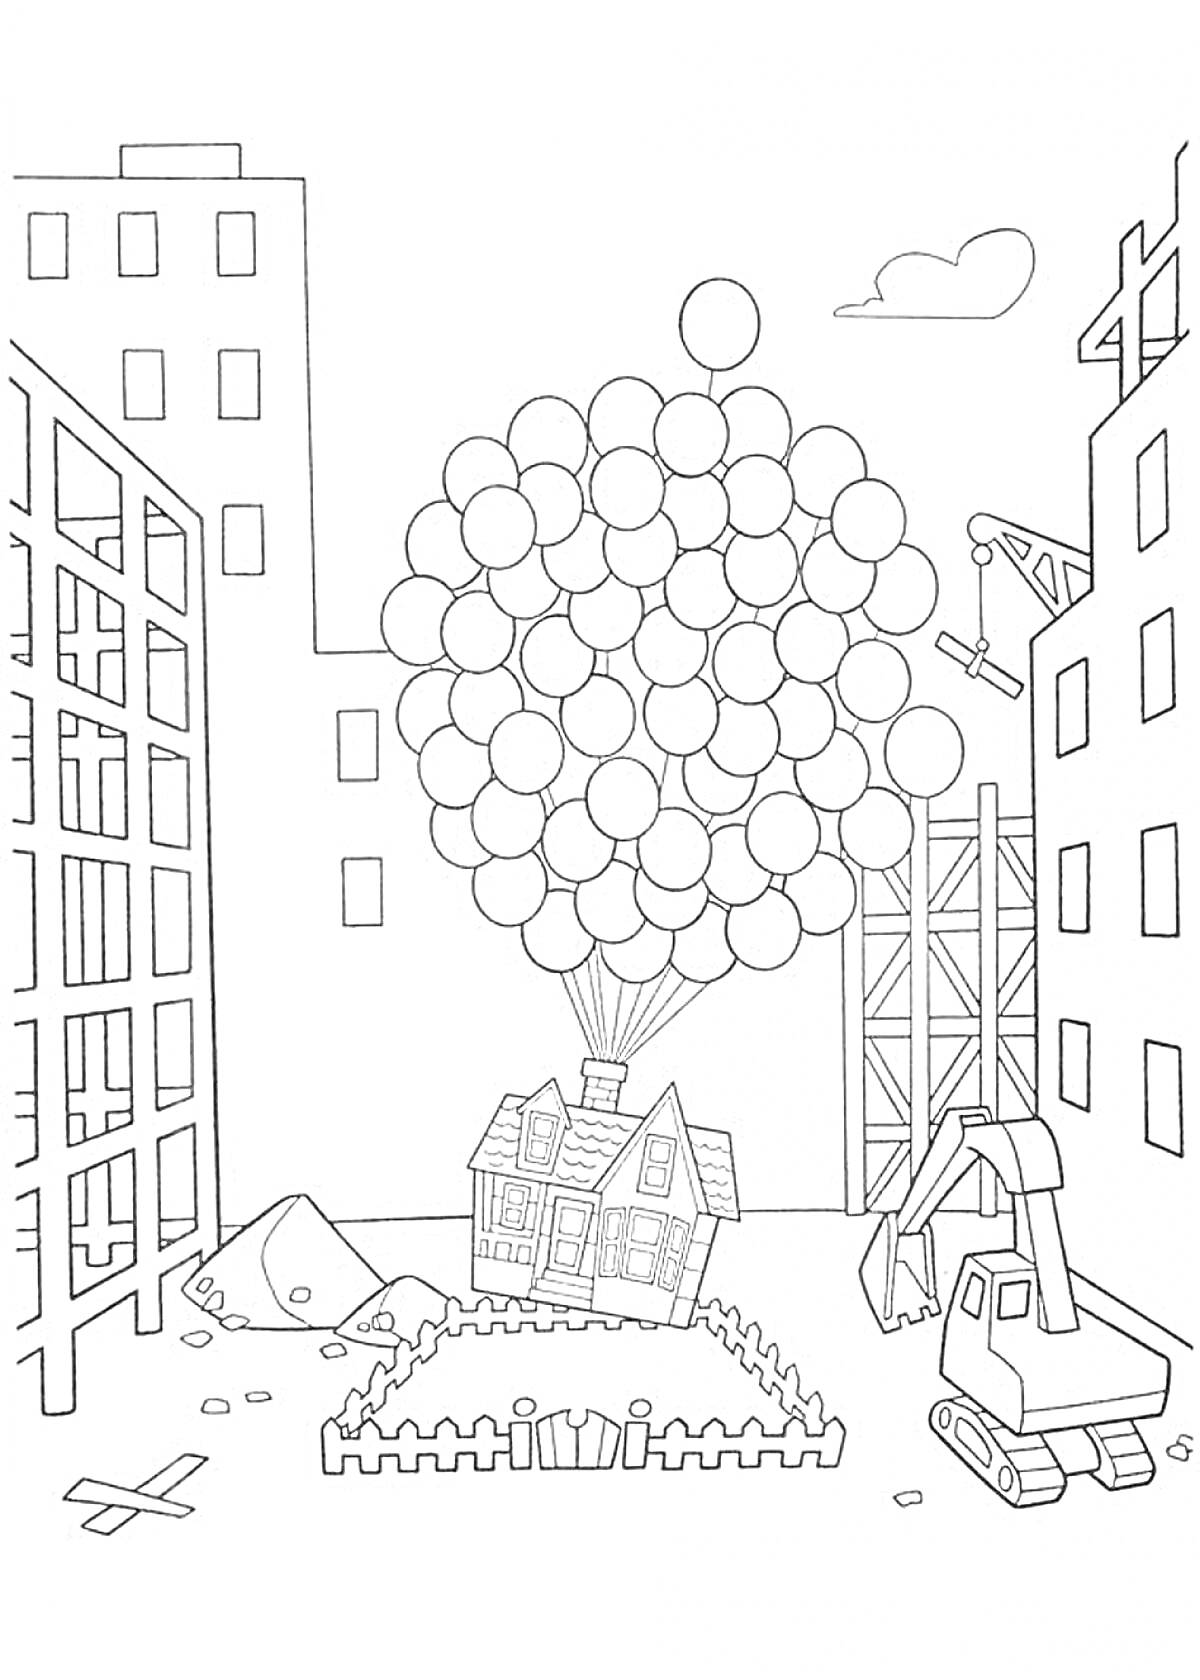 Раскраска Дом, привязанный к воздушным шарам, поднимается на стройке в центре города